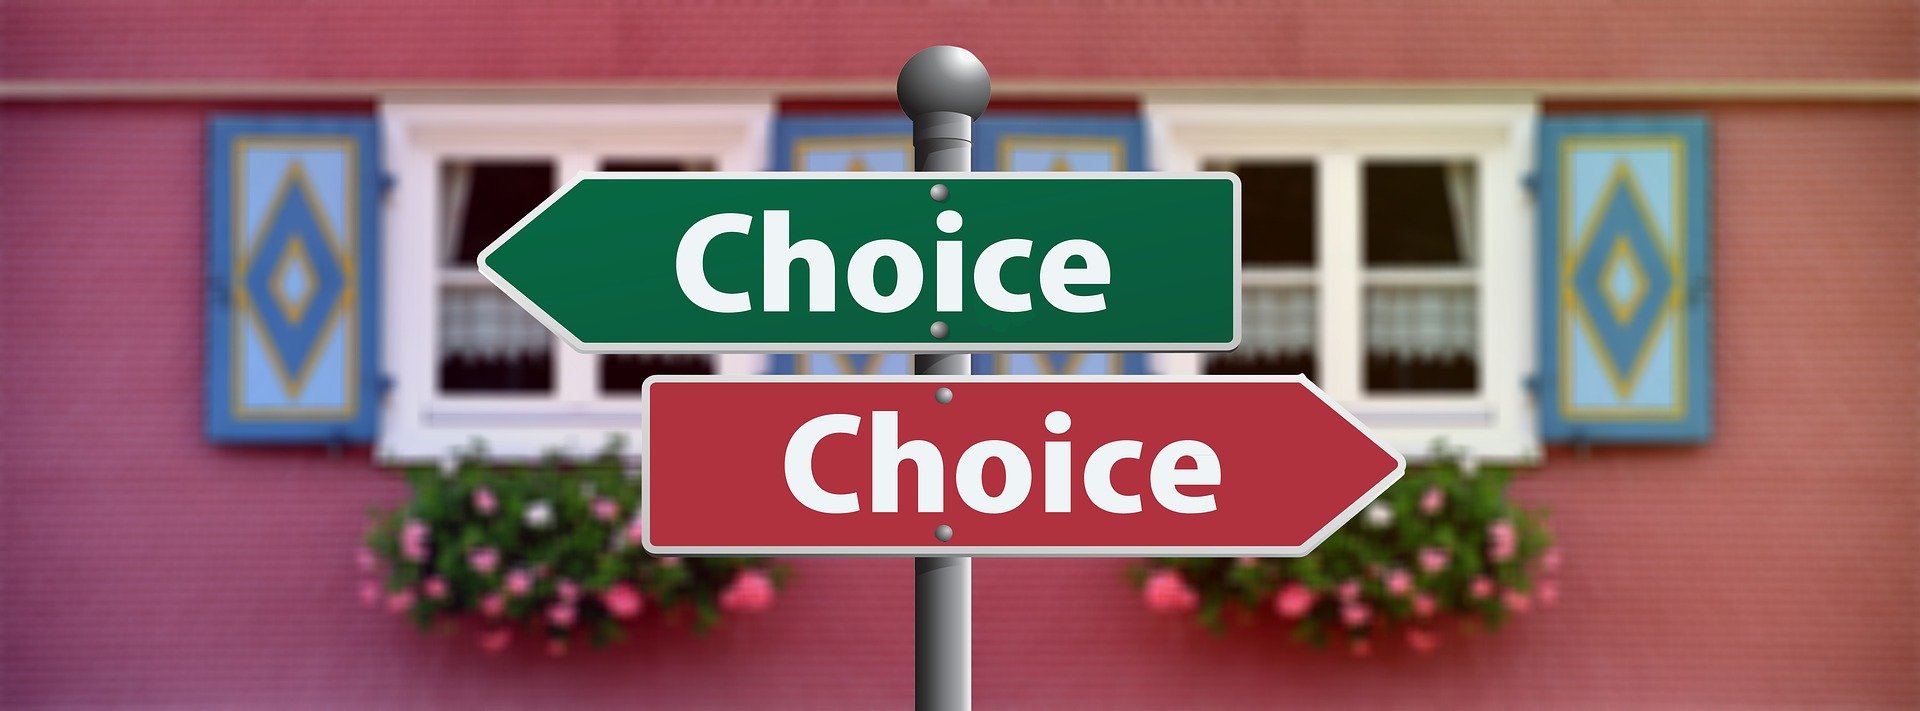 Choice(選ぶ)と表記された看板 